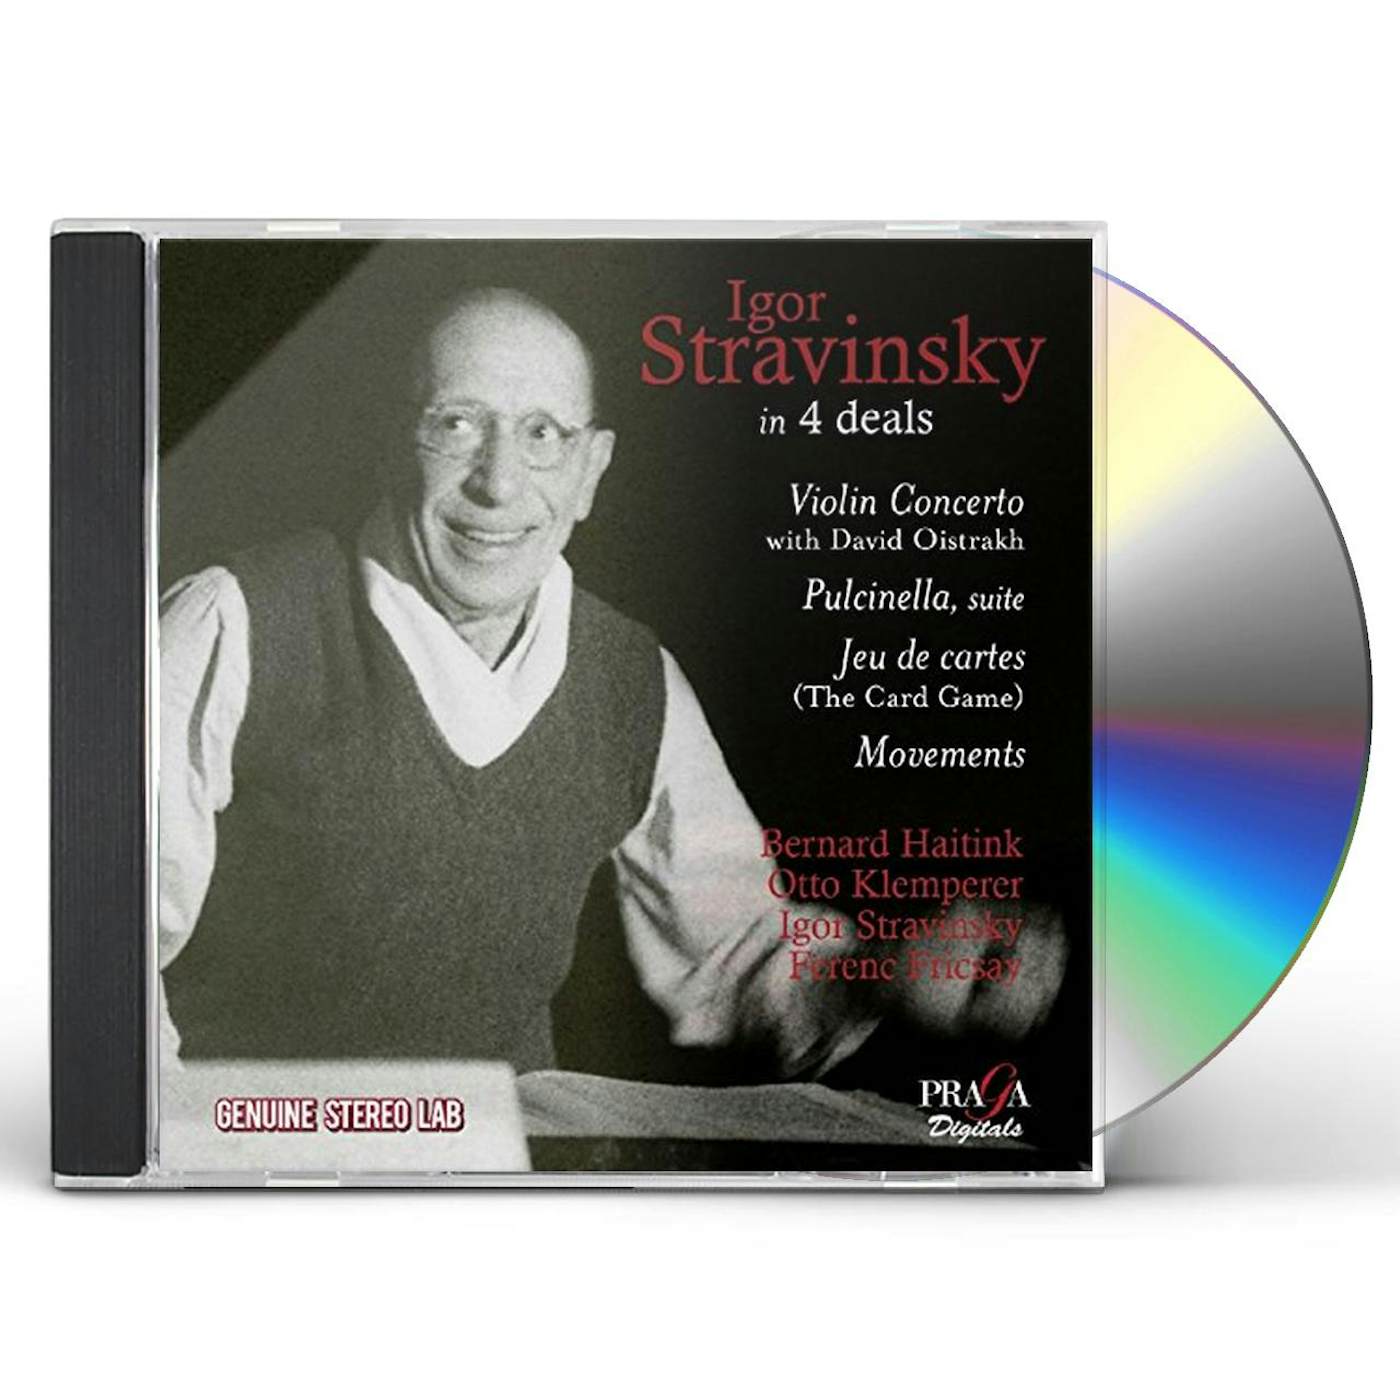 IGOR STRAVINSKY IN 4 DEALS CD